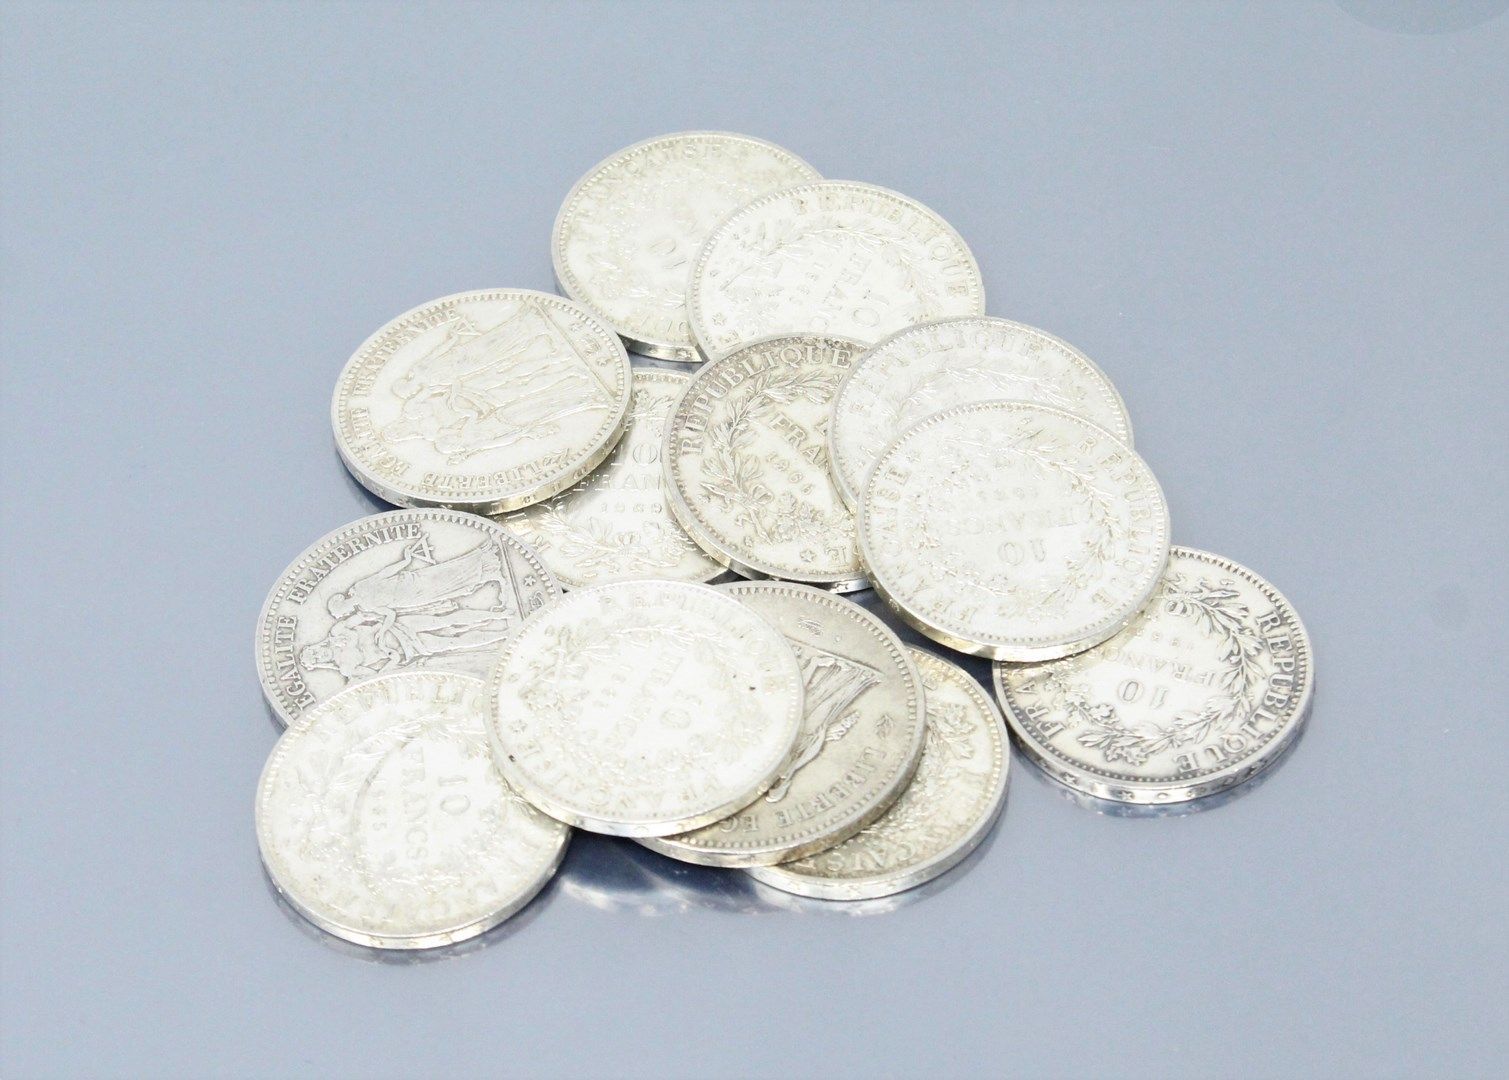 Null Monedas de plata del tipo "Hércules":

- 50 F : 1976

- 10 F : 1965 (x6) - &hellip;